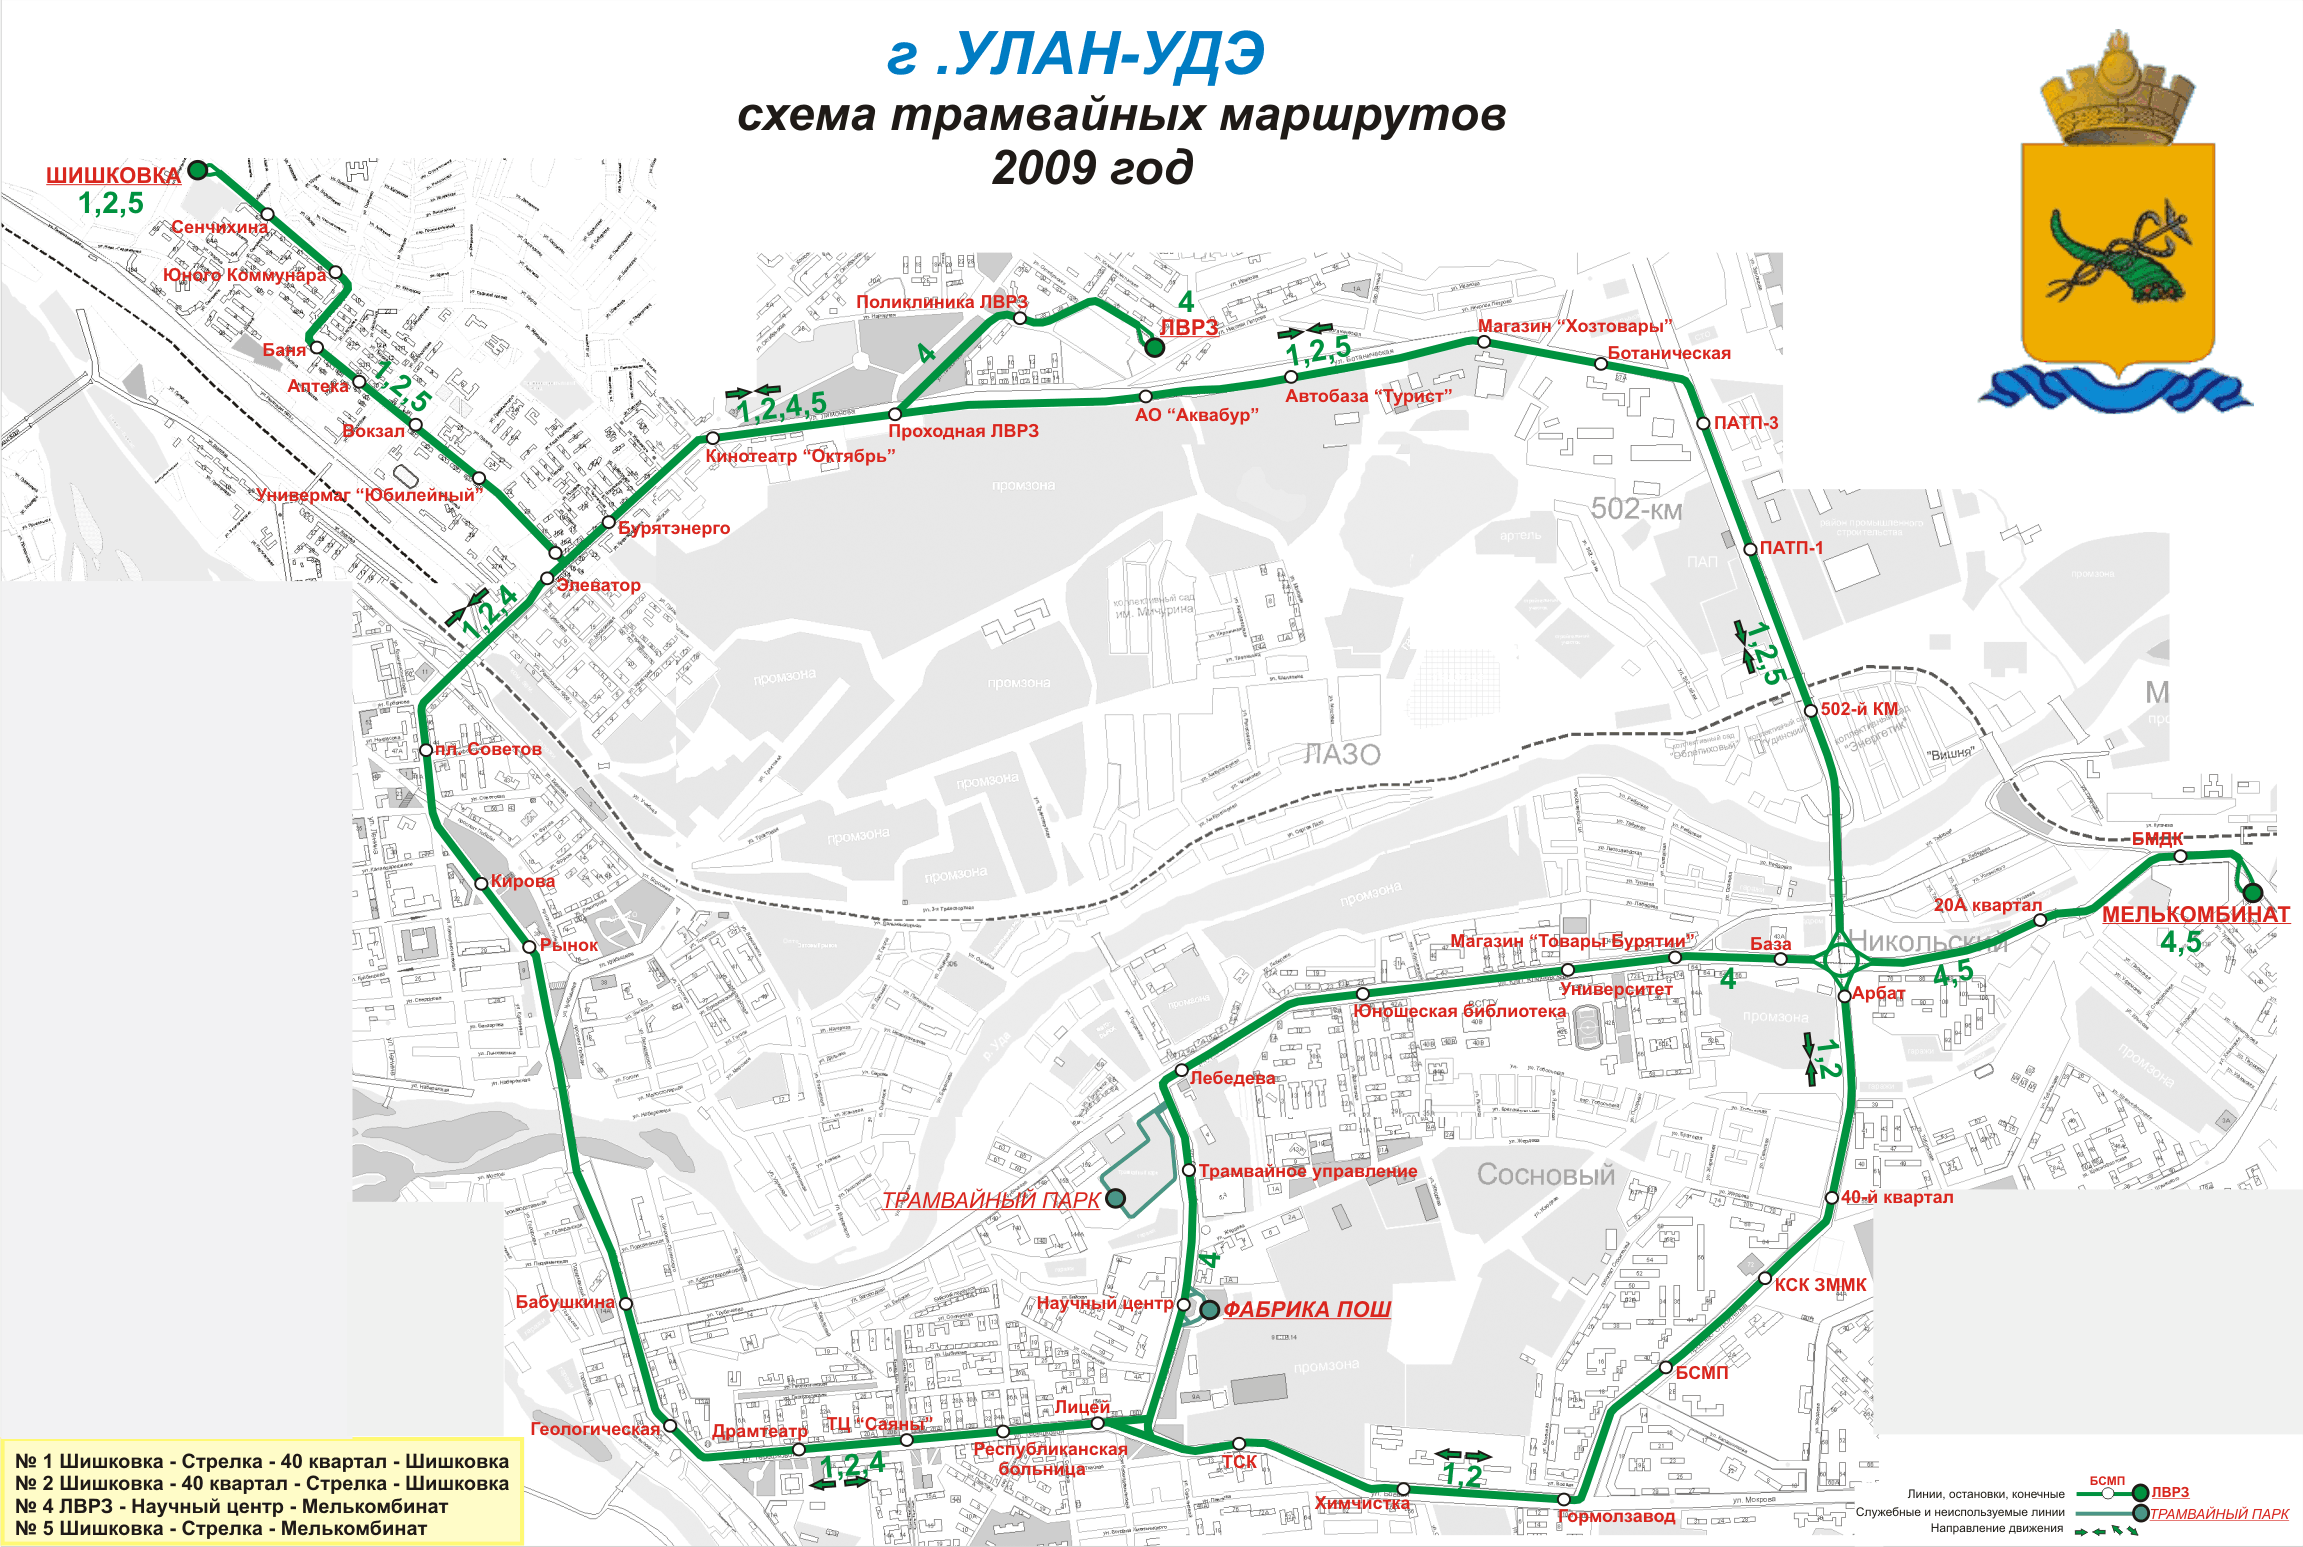 Маршрут 4 улан удэ. Схема маршрутов трамвая Улан-Удэ. Маршрут трамвая 7 Улан-Удэ схема движения. Схема трамваев Улан-Удэ. Маршрут трамвая 1 Улан-Удэ схема движения.